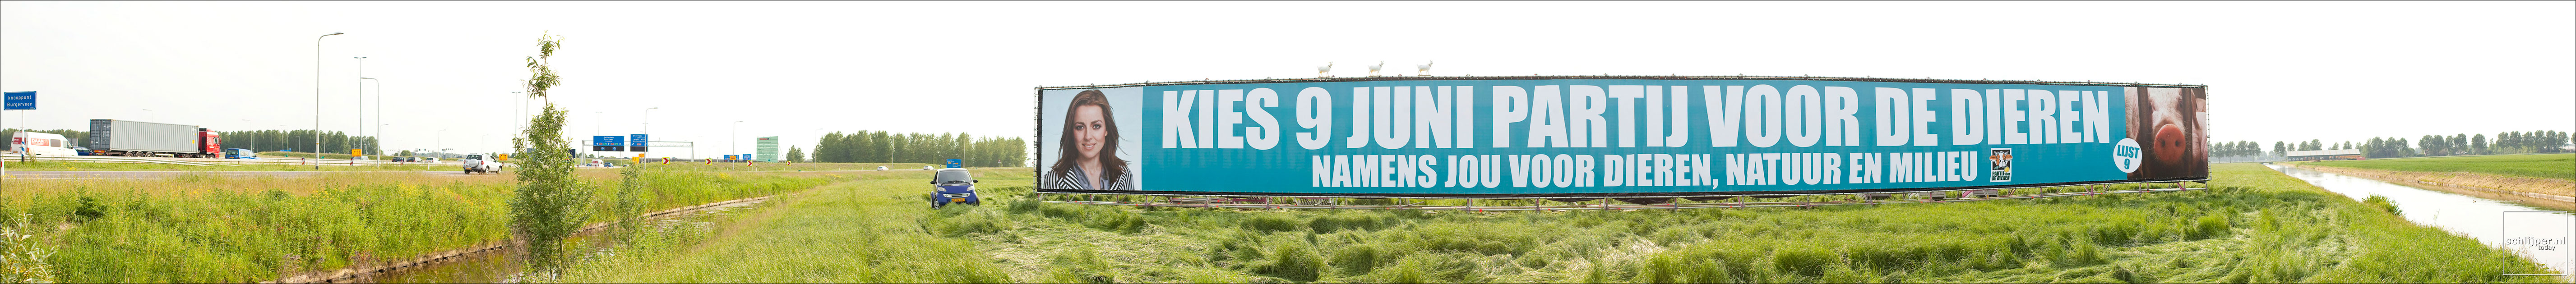 Nederland, Haarlemmermeer, 5 juni 2010